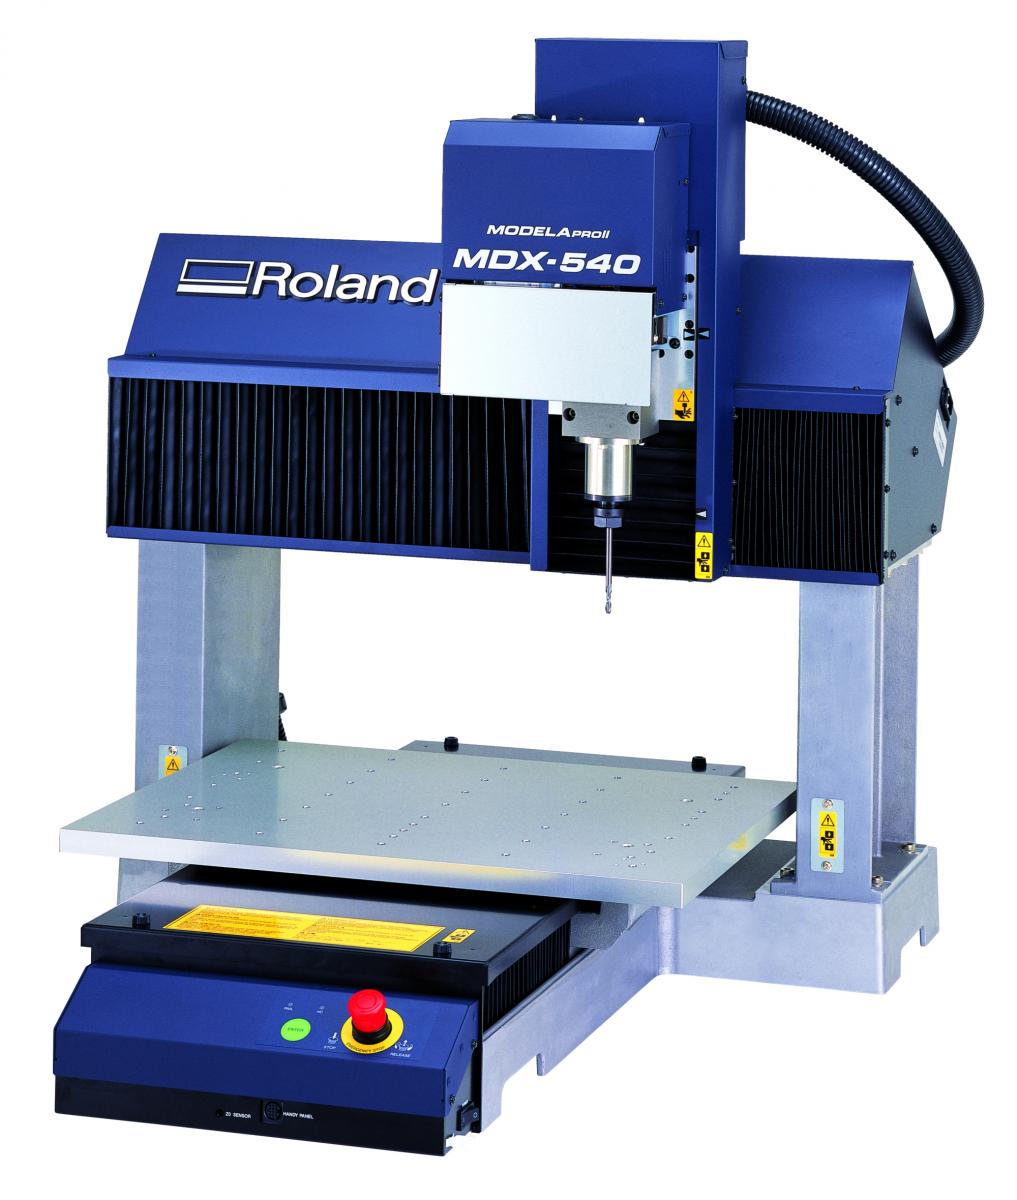 Il modellatore tridimensionale Roland MODELA PROII MDX-540